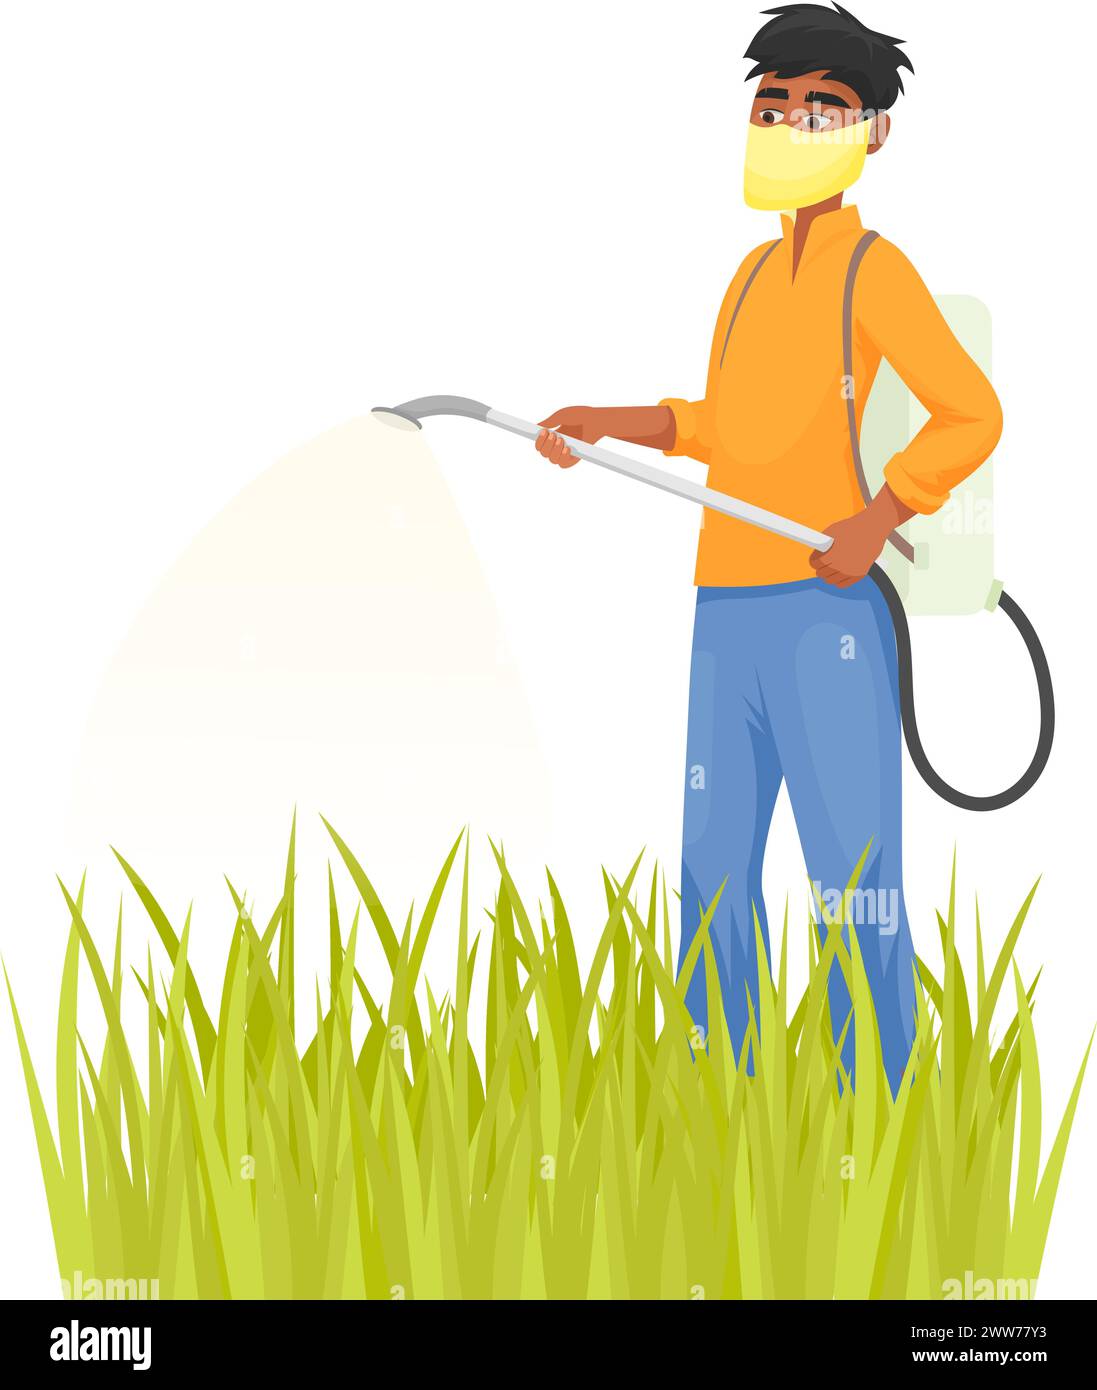 Asiatischer Landwirt, der Gras sprüht. Cartoon Gartenfigur isoliert auf weißem Hintergrund Stock Vektor